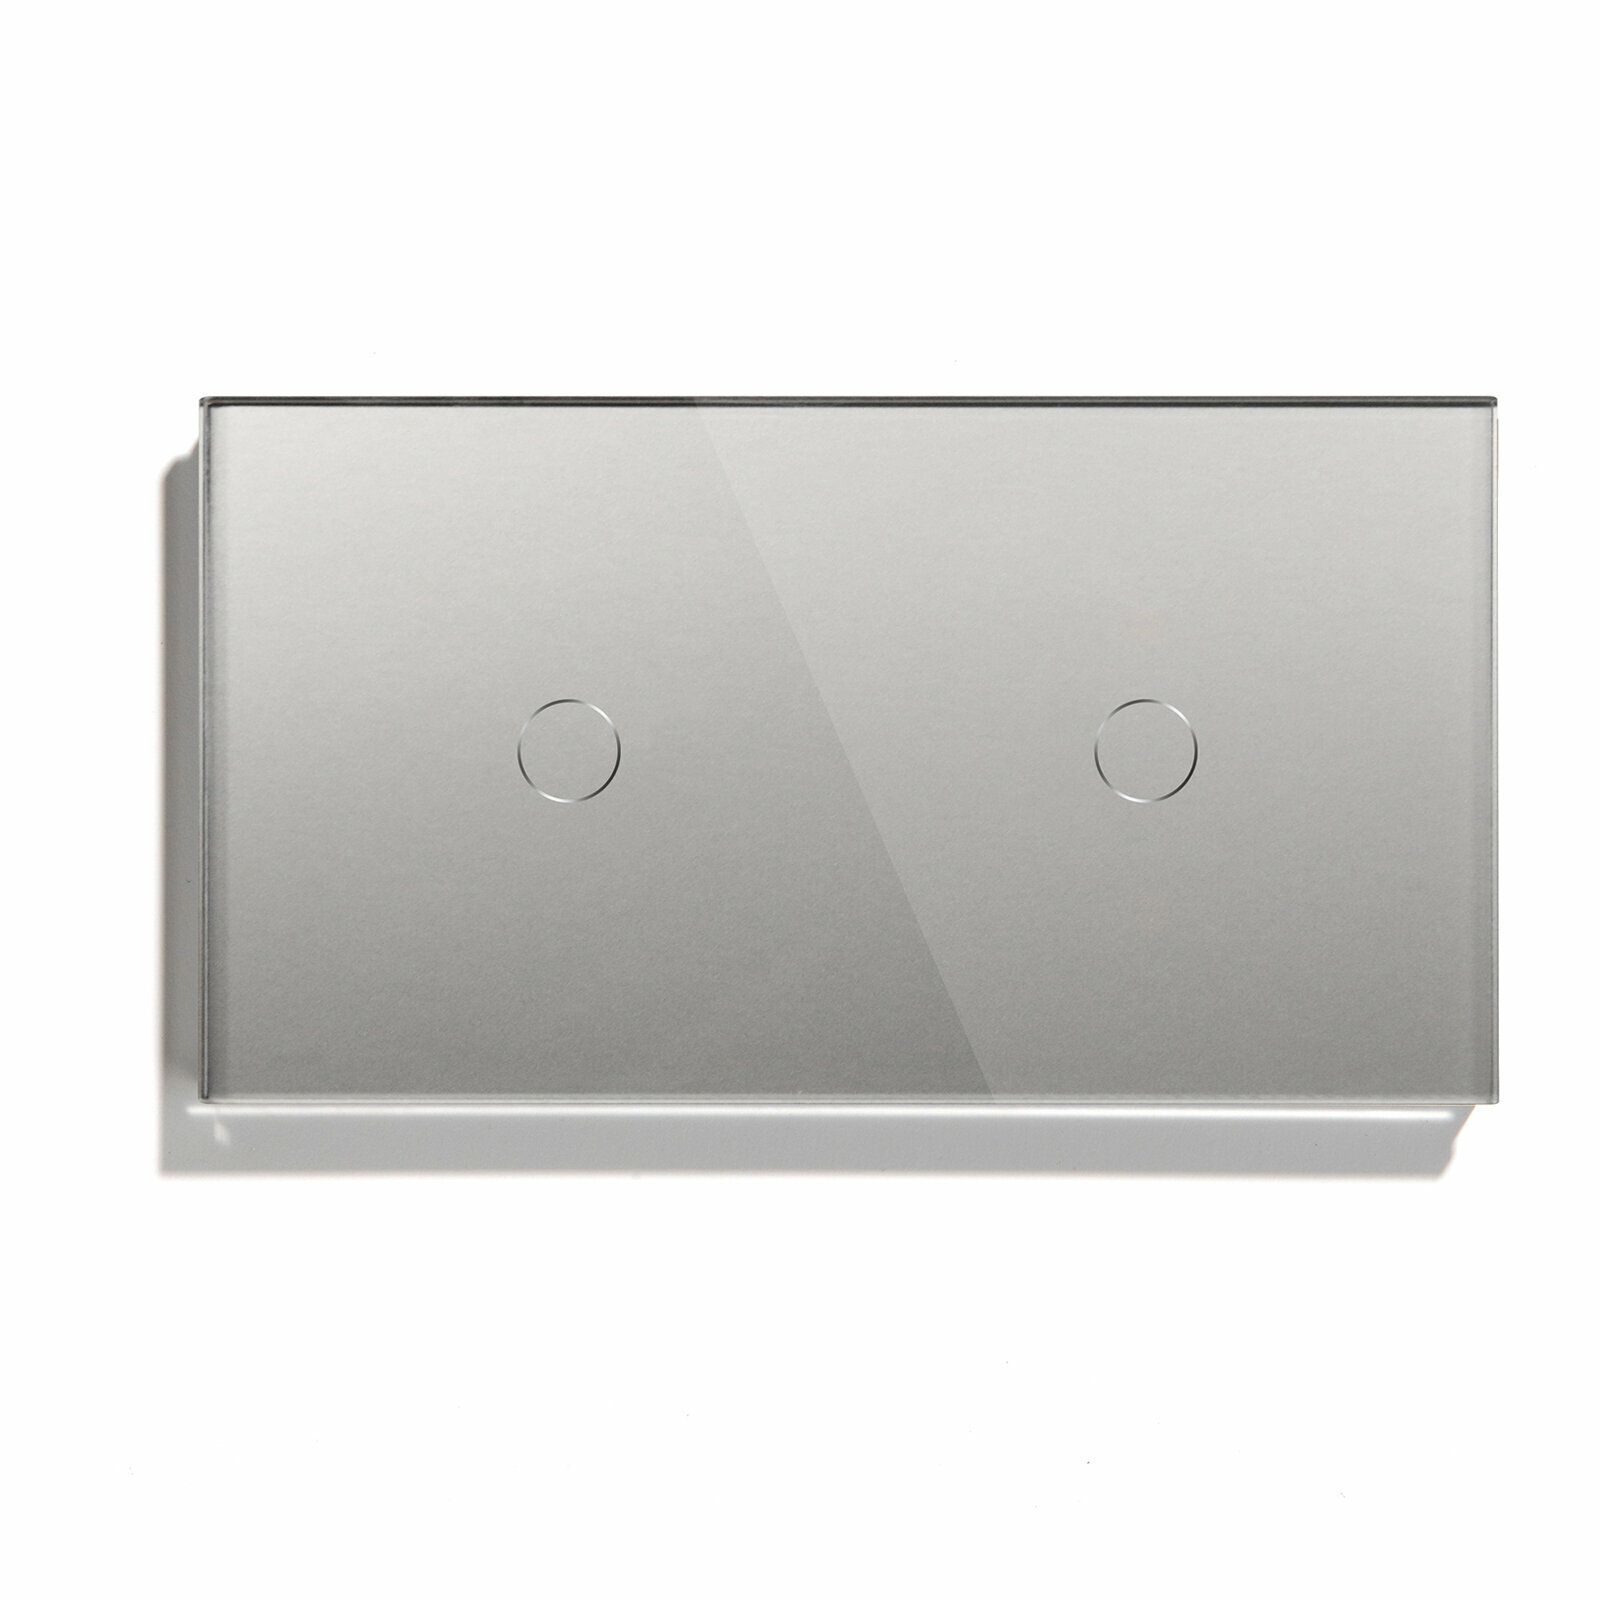 Сенсорный выключатель 2 клавиши, 2 поста (1G+1G), стекло 157х86мм, цвет серый